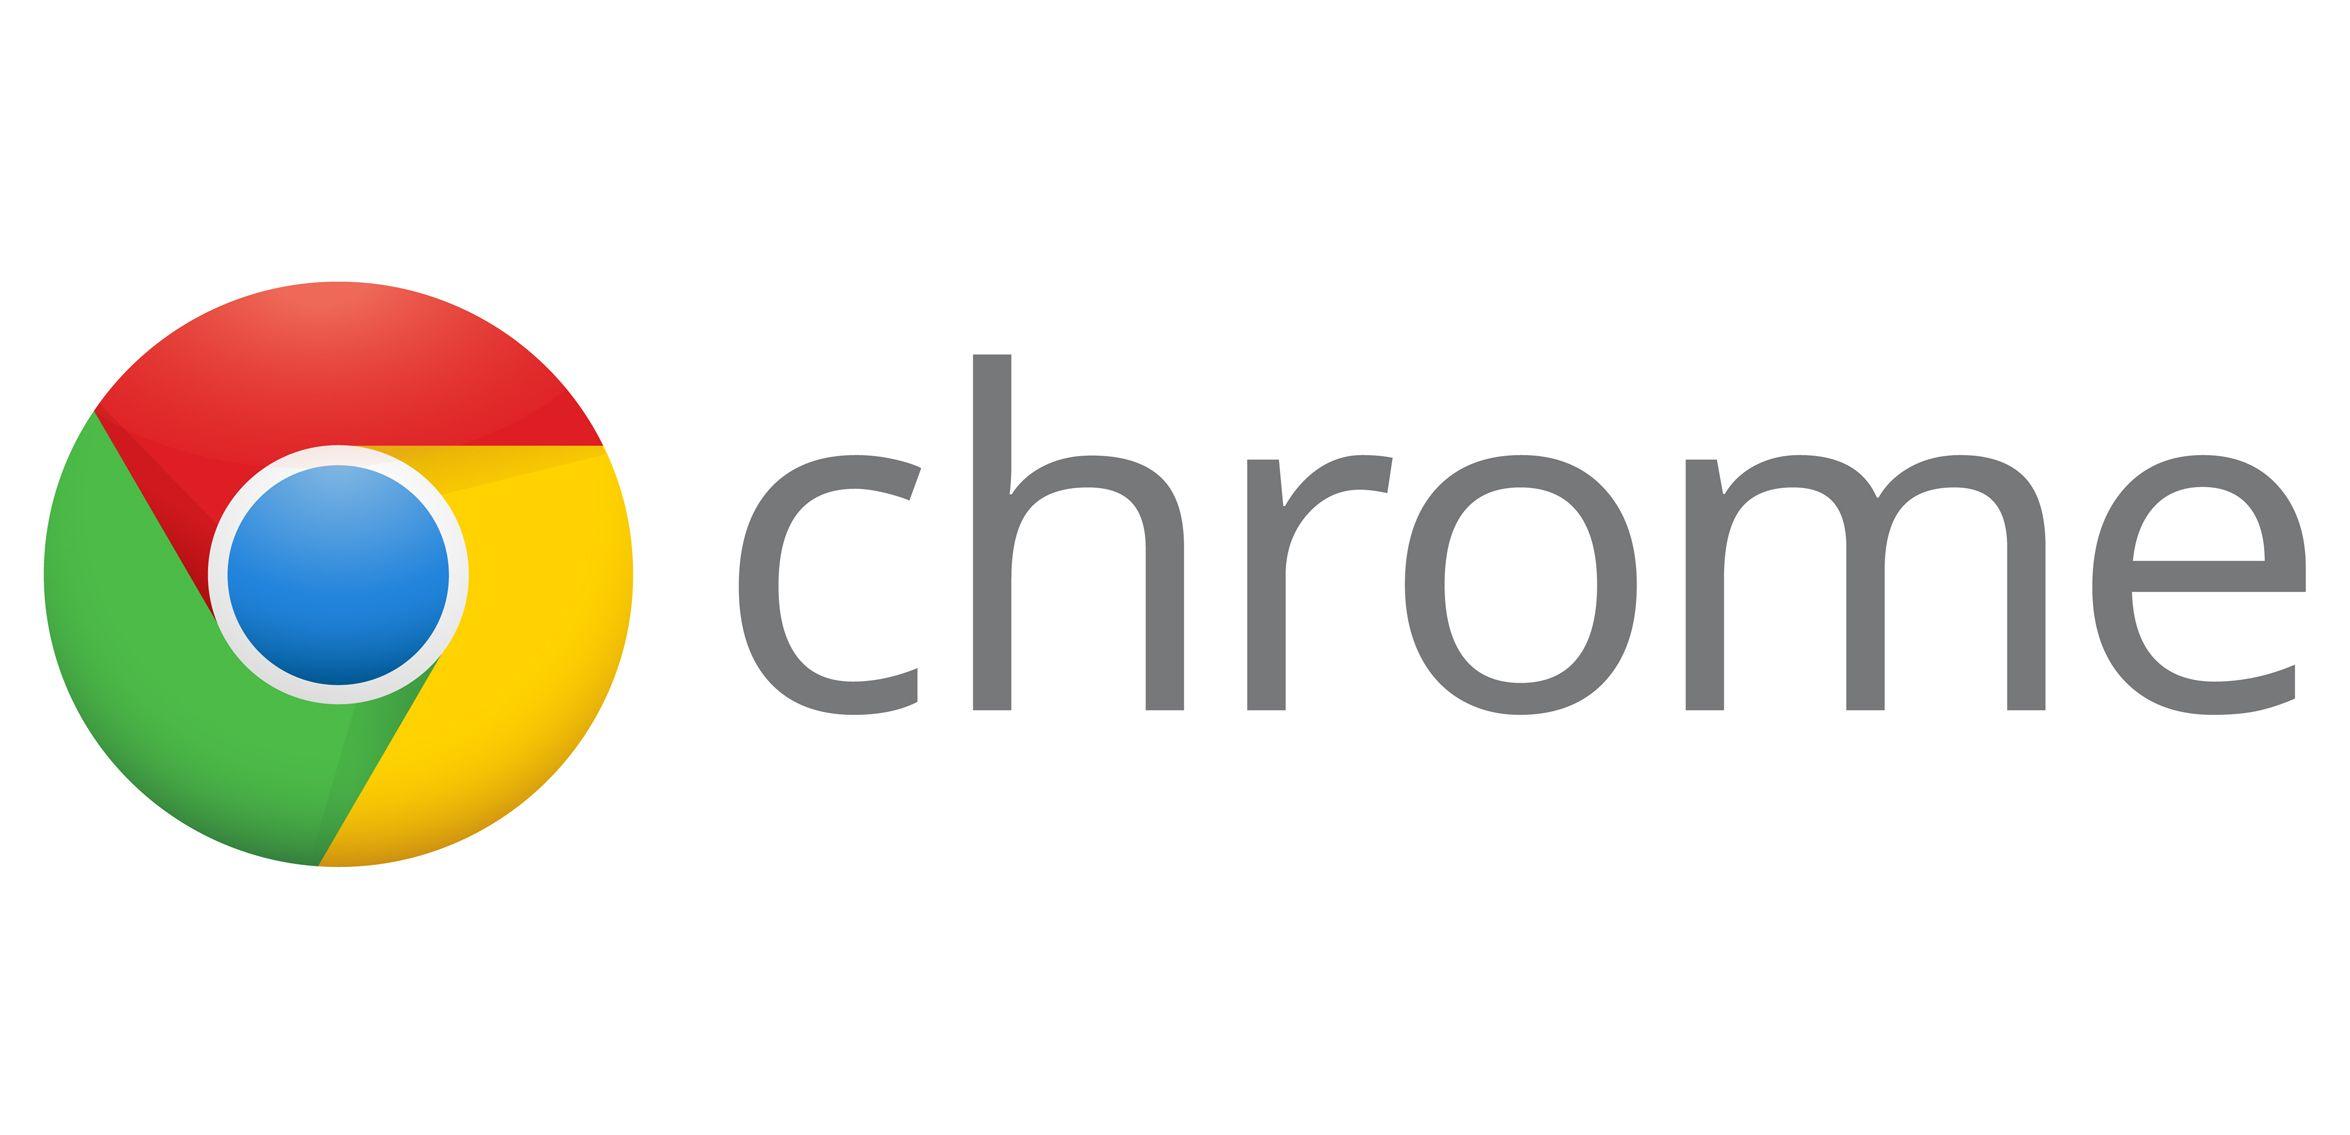 Google Chrome Original Logo - Chrome Logo, Chrome Symbol, Meaning, History and Evolution